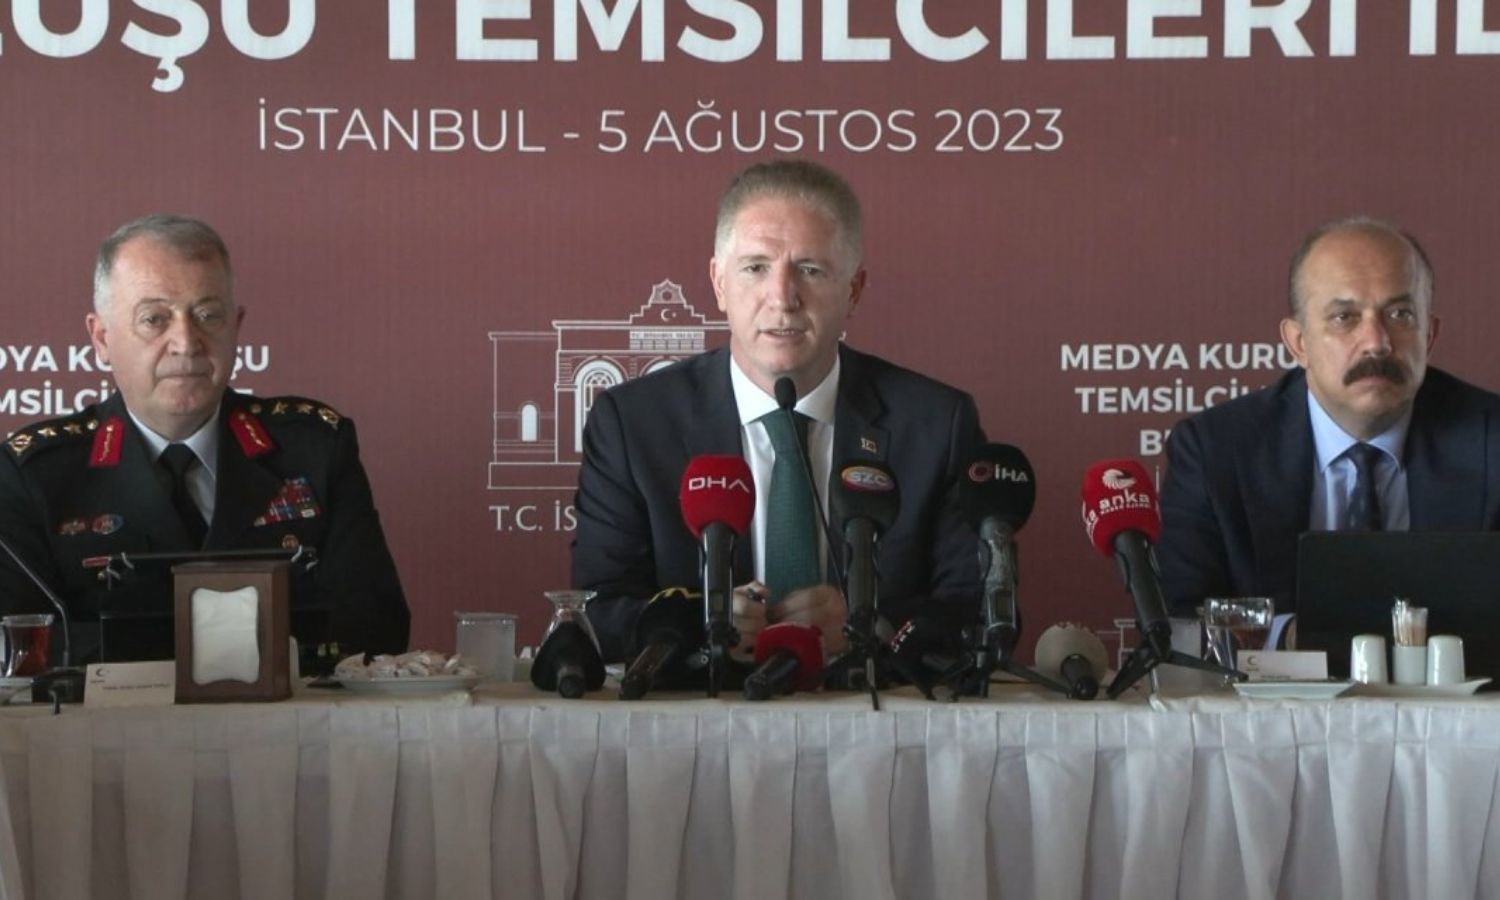 والي اسطنبول داوود غول يقدم معلومات حول معدل الجريمة في الولاية والتعامل مع المهاجرين "غير الشرعيين"-5 من آب 2023 (DHA)